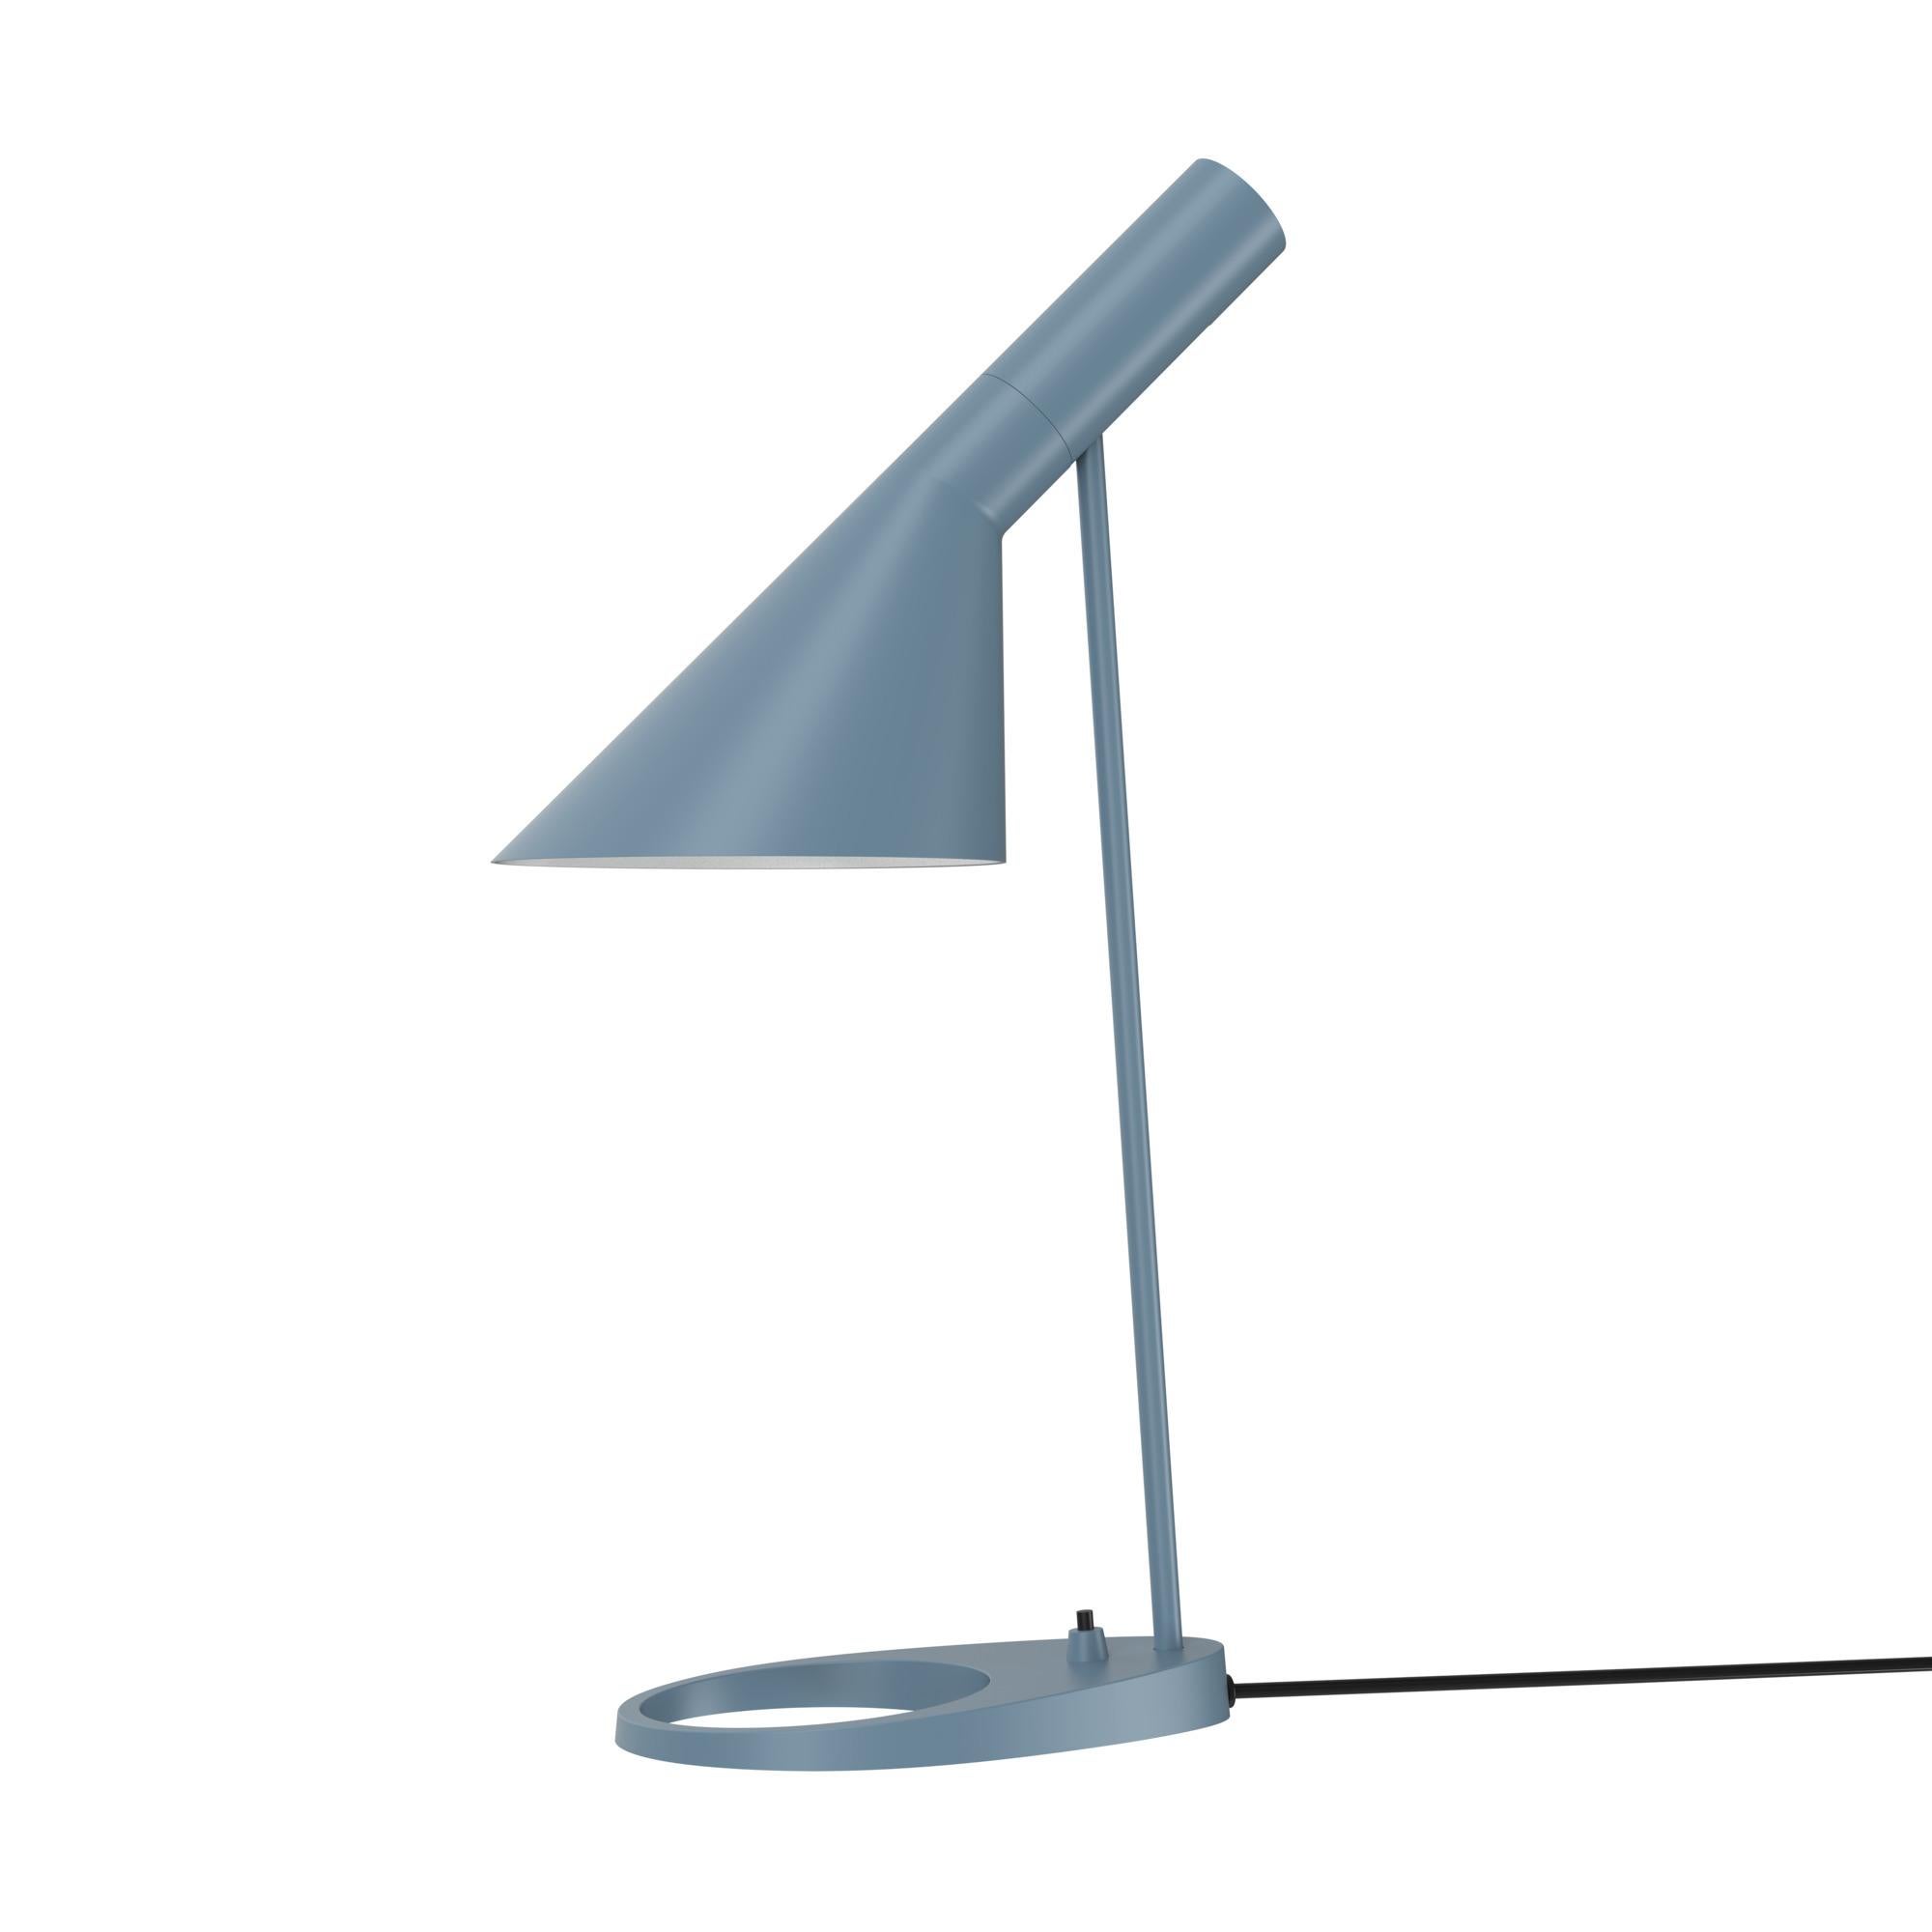 Arne Jacobsen AJ Table Lamp in Black for Louis Poulsen For Sale 2